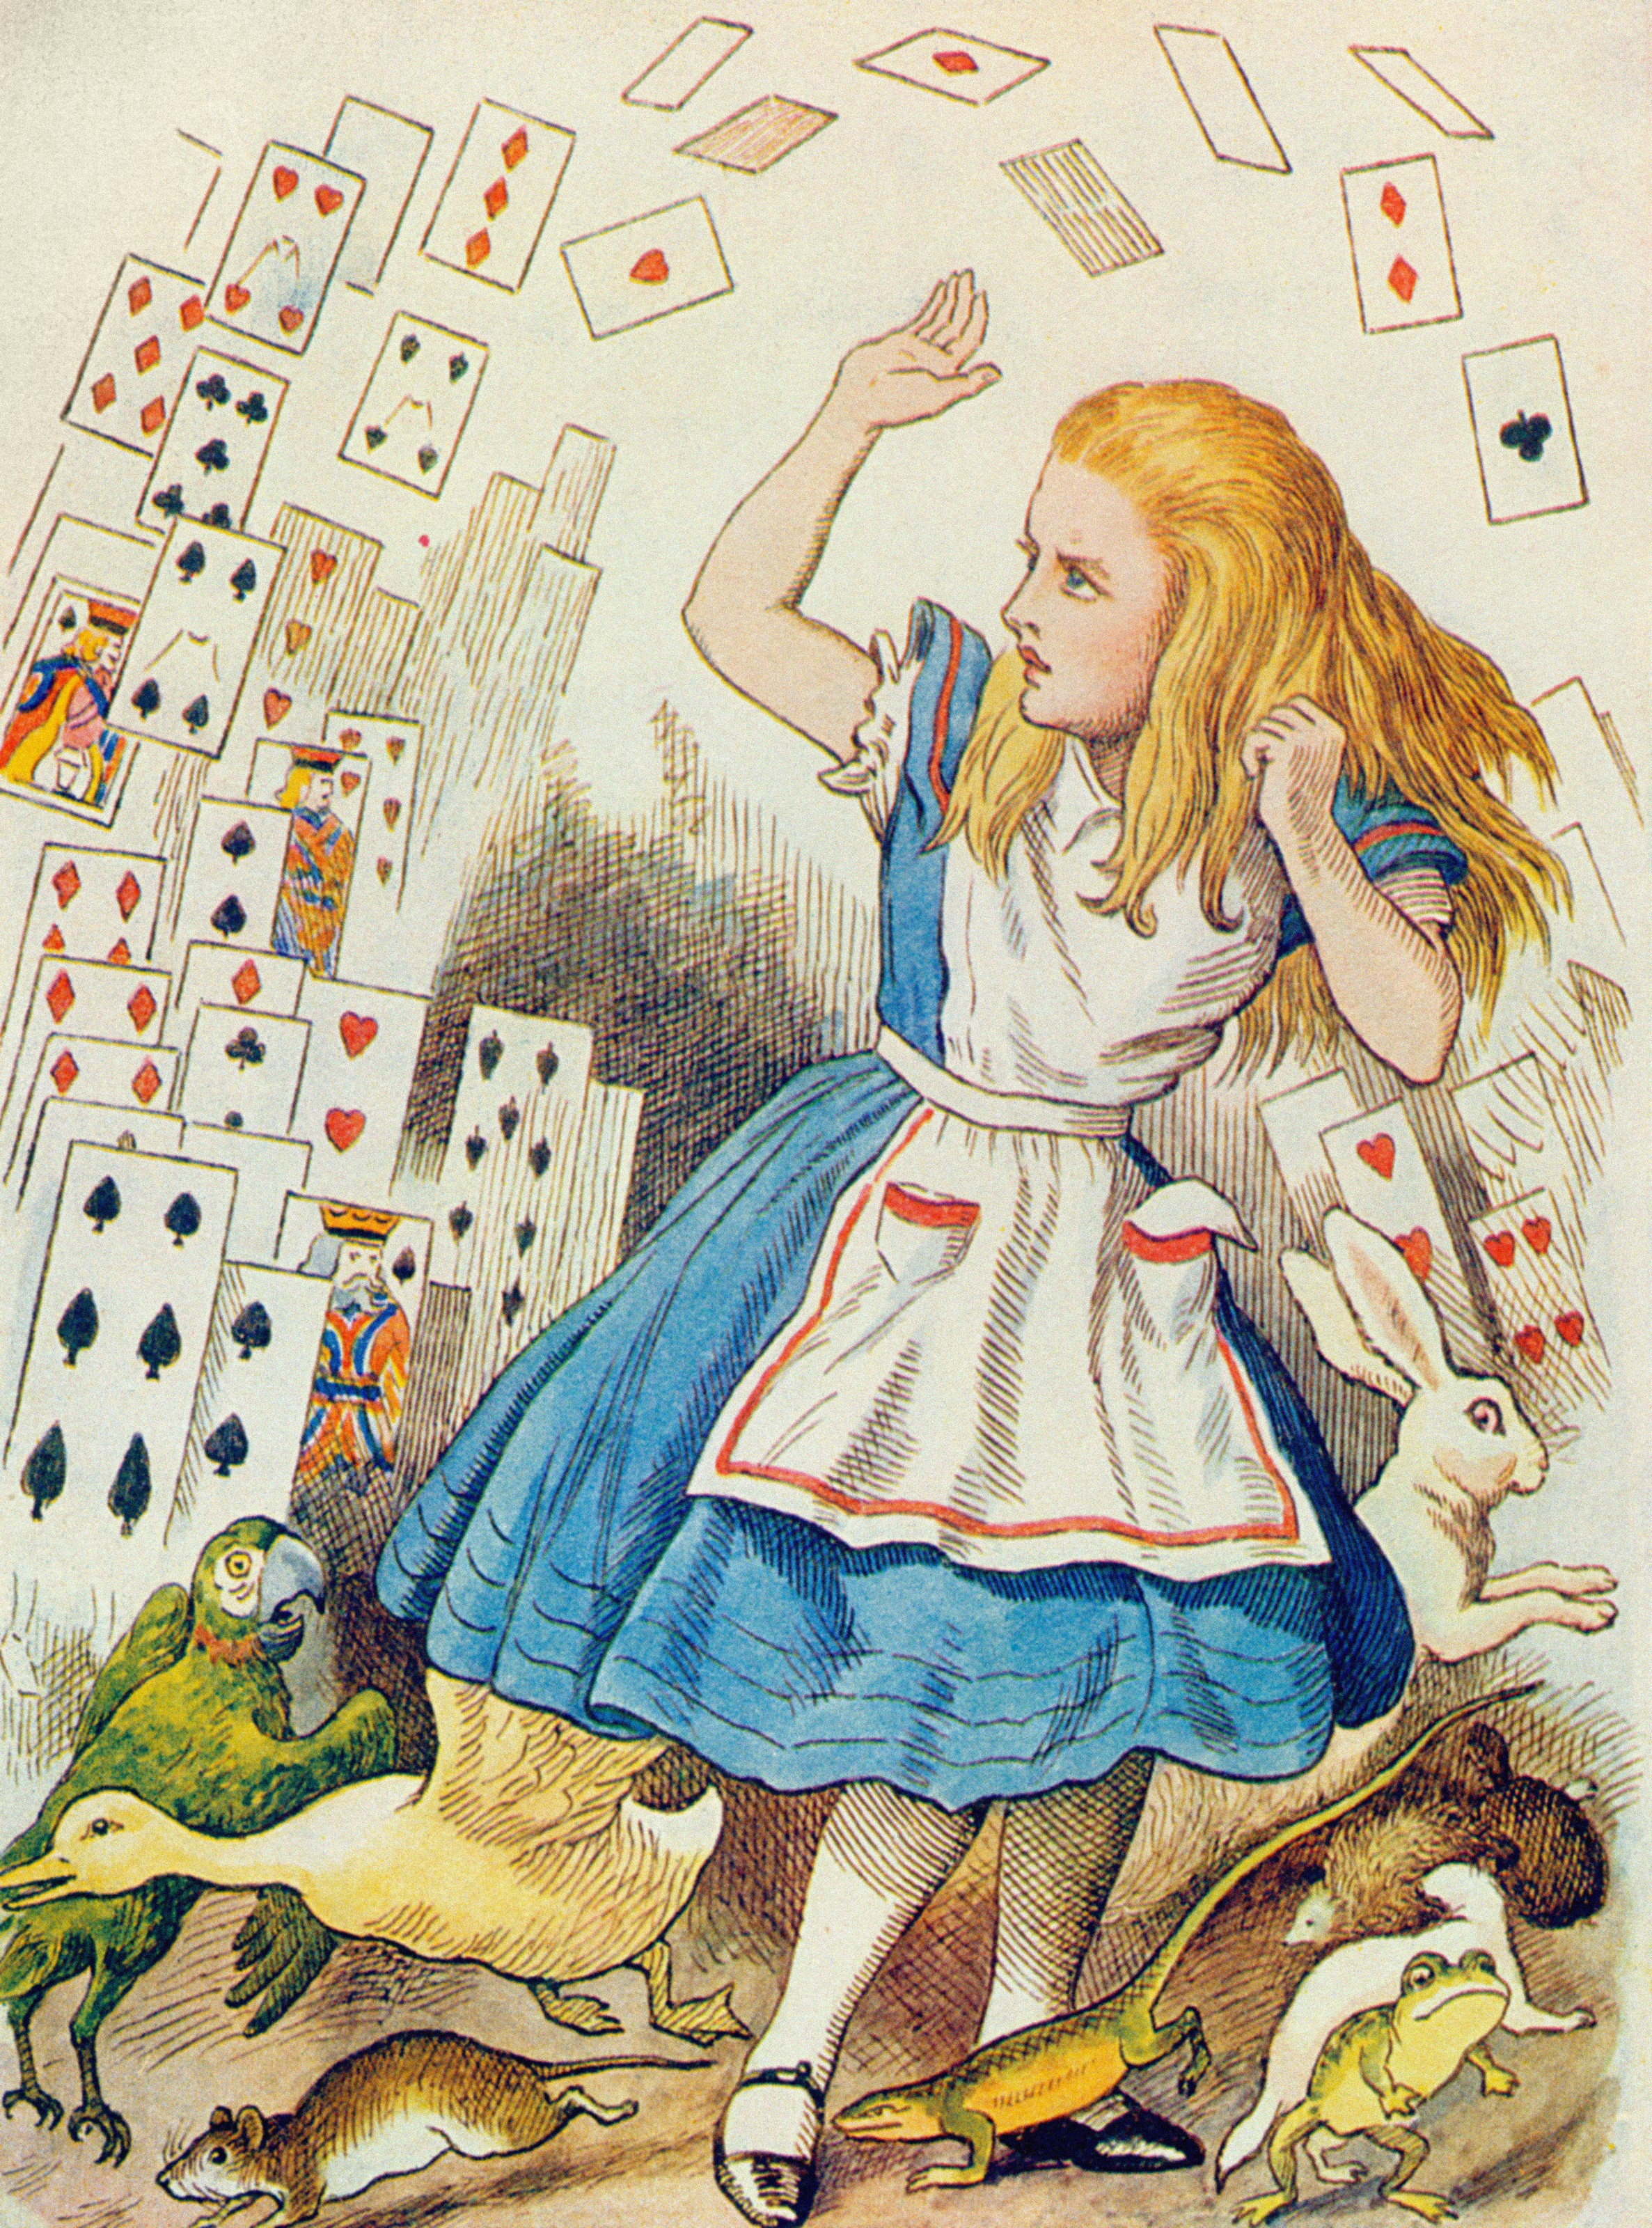 Сказку про алису в зазеркалье. Кэрролл Льюис "Алиса в стране чудес". Льюис Керрол: «Алиса в стране чудес». Алиса в стране чудес иллюстрации. Льюис Кэролл Алиса в стране чудес.